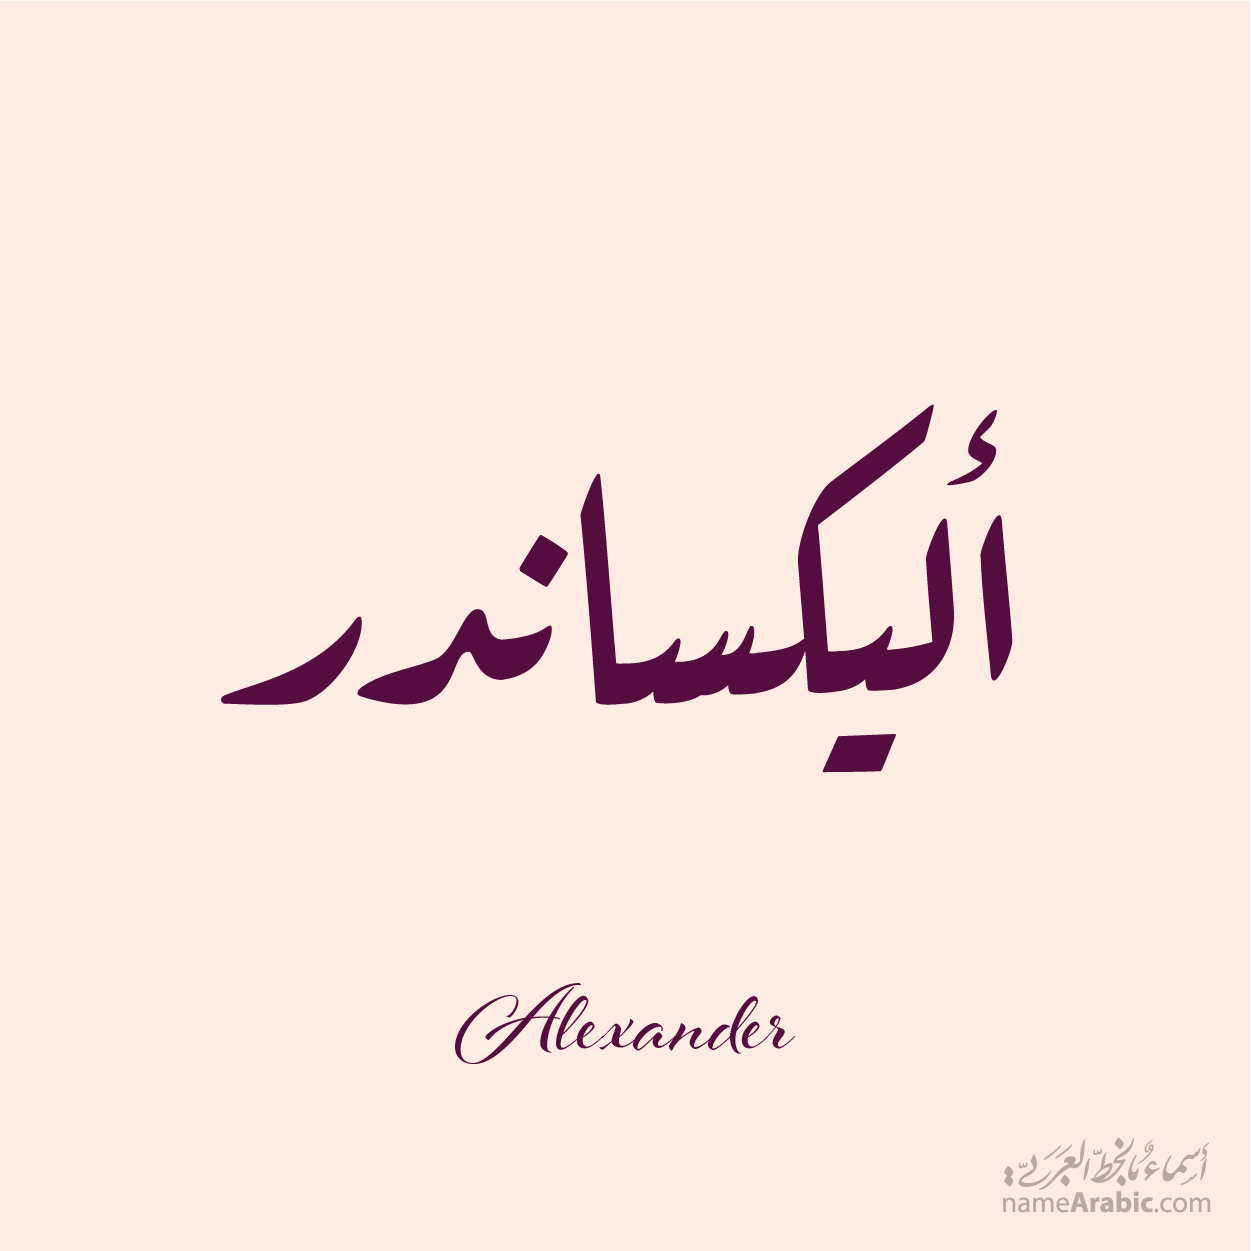 Alexander Name design with Arabic Quqaa script